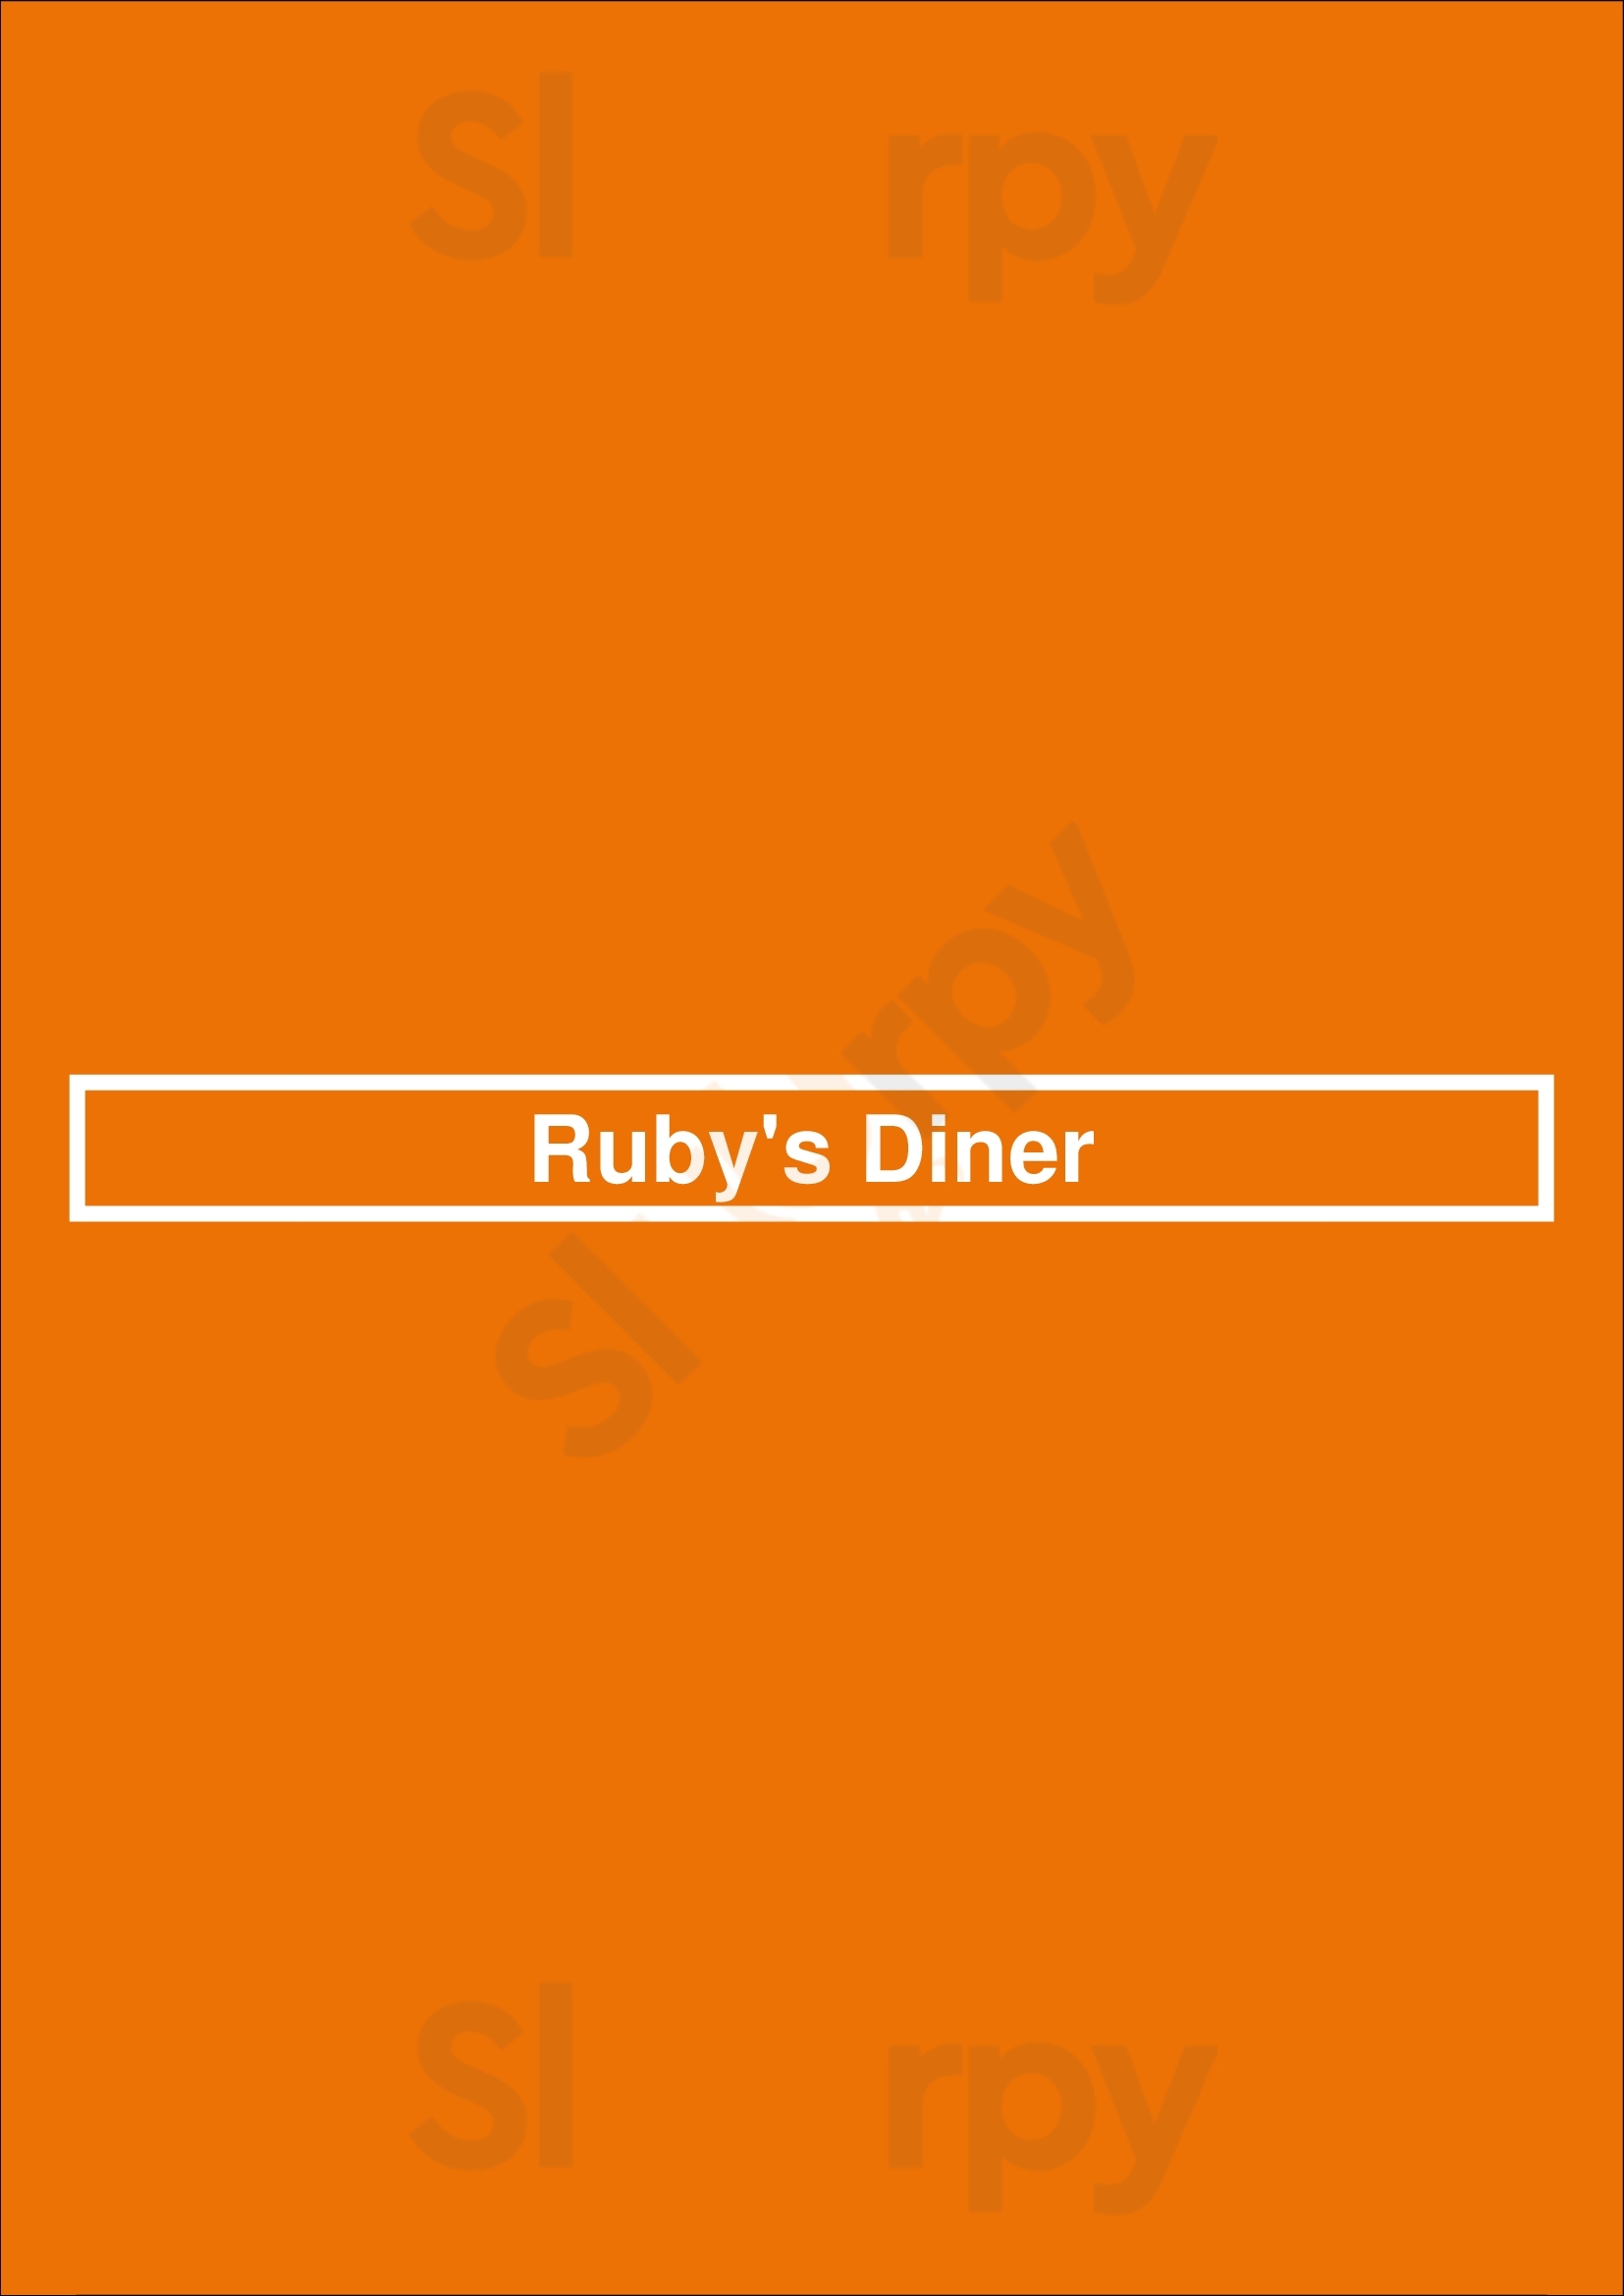 Ruby's Diner Corona del Mar Menu - 1